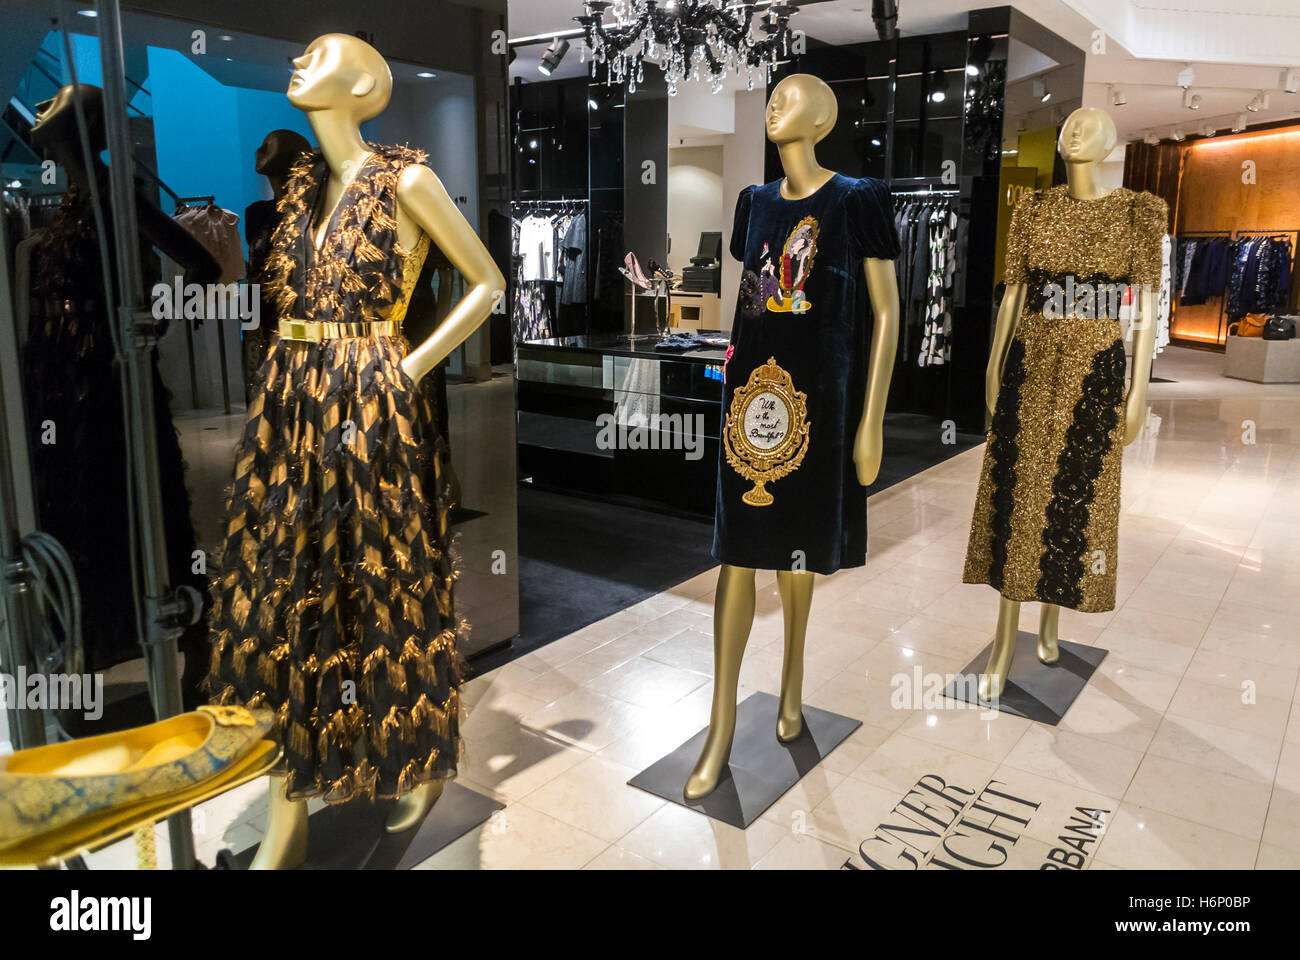 San Francisco, CA, USA, Designergeschäft mit Schaufensterpuppen-Modedesign, Kleider, im 'Dolce & Gabbana'-Geschäft, Bekleidungsgeschäfte in Luxus-Kaufhäusern, Saks Fifth Avenue, Haute Couture-Kleidung, Mode-Labels Stockfoto